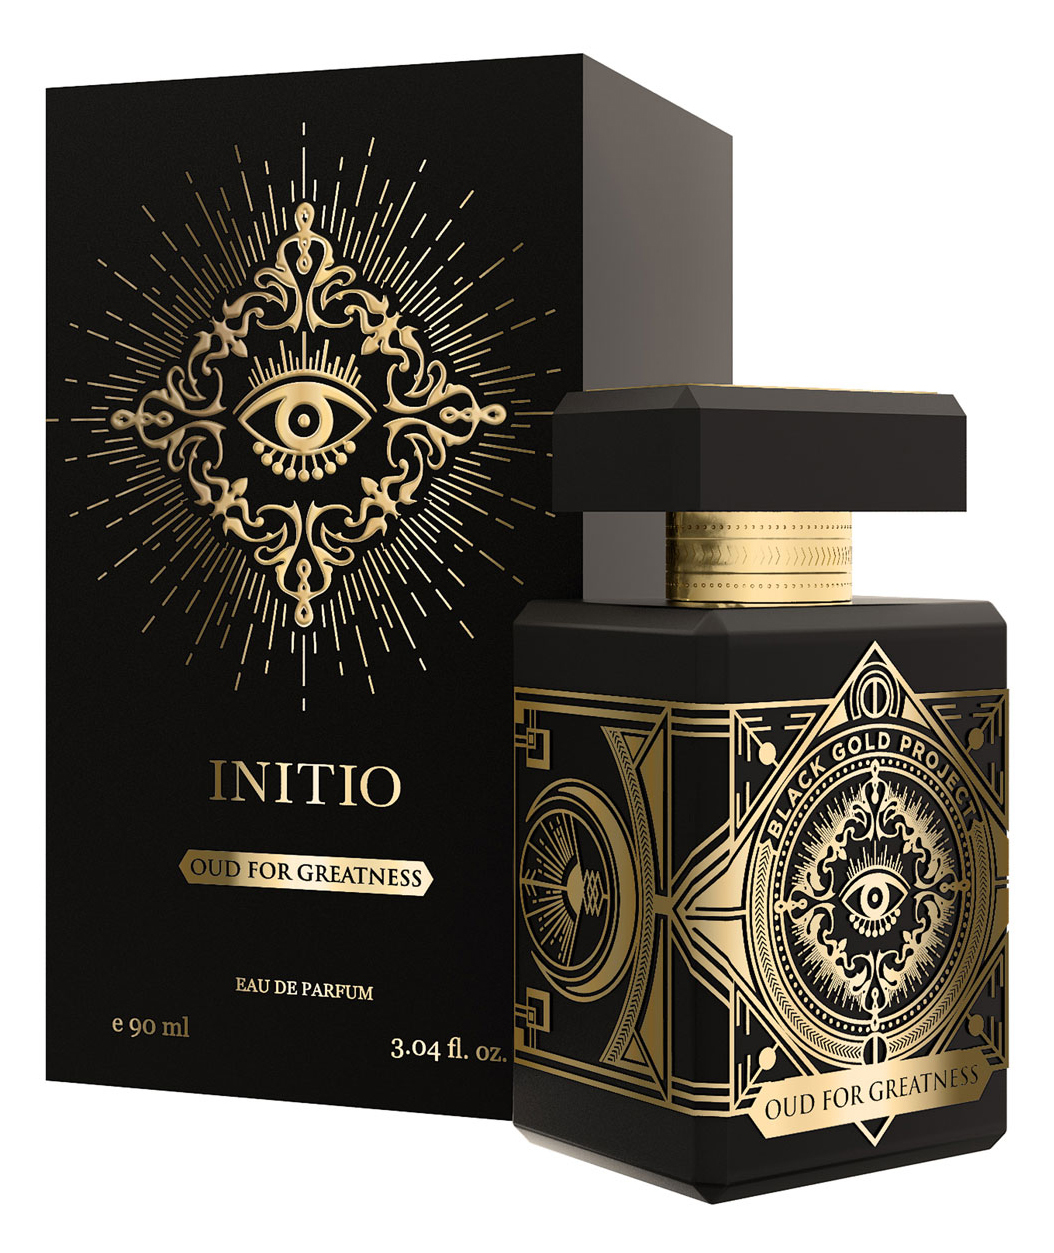 Initio Oud for Greatness Eau de Parfum 90 ml